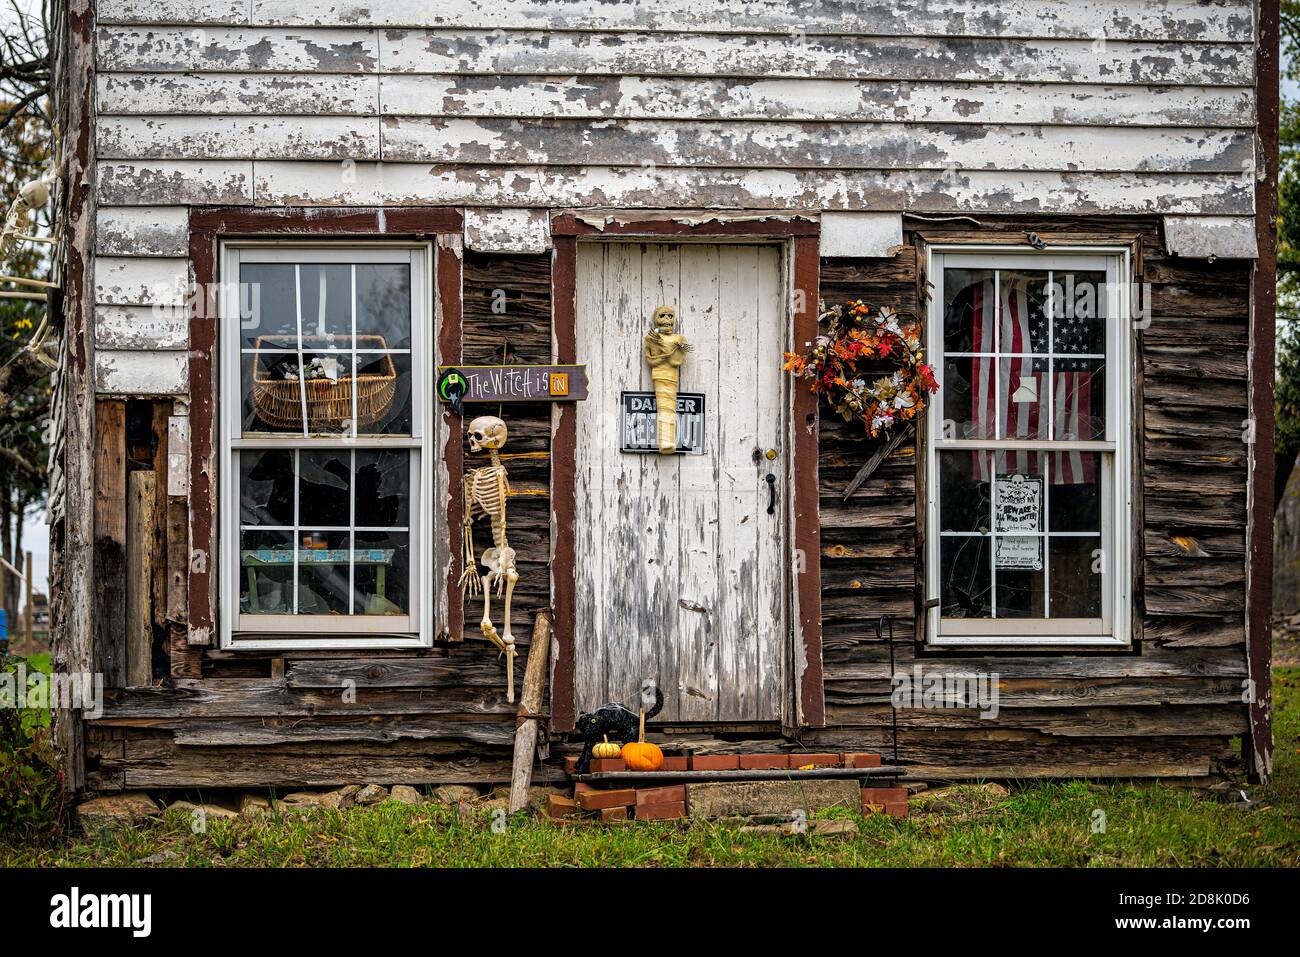 Washington, États-Unis - 27 octobre 2020: Maison hantée bâtiment d'amusement appelé Crossbone inn avec des squelettes et Halloween décorations de vacances, Wi cassé Banque D'Images